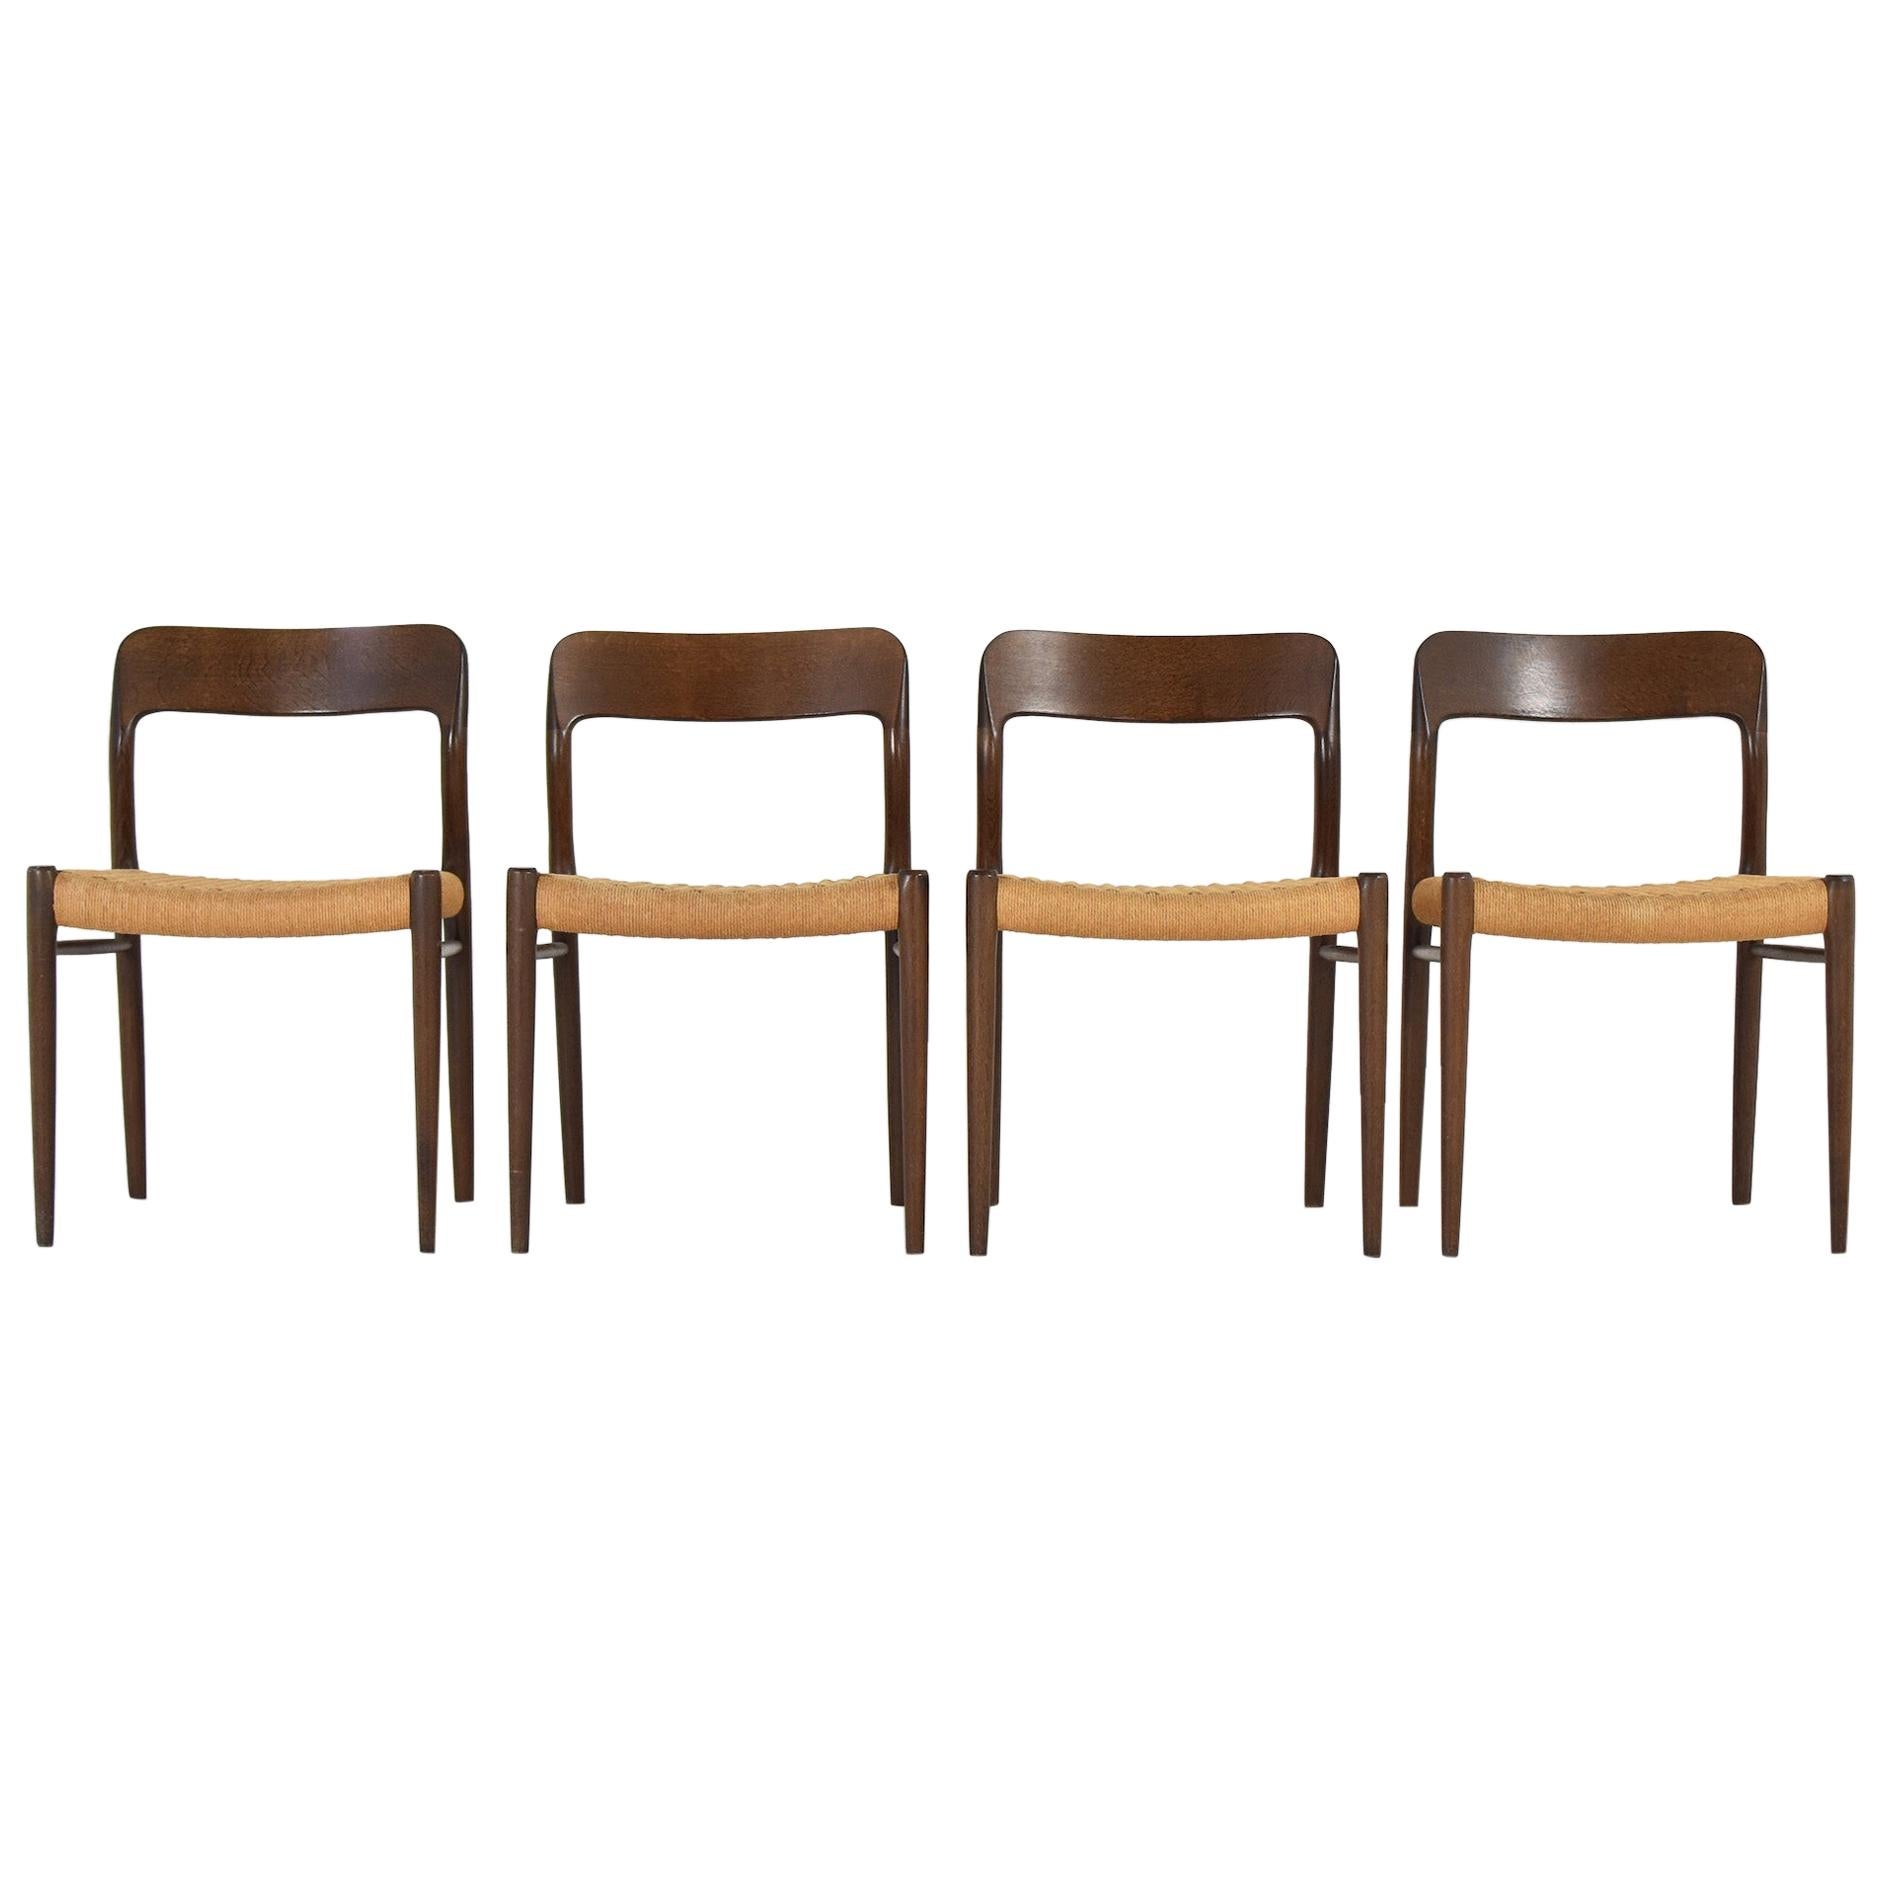 Set ‘model 75’ Chairs by Niels O. Møller for J.L.Møllers Mobelfabrik, DK, 1960s